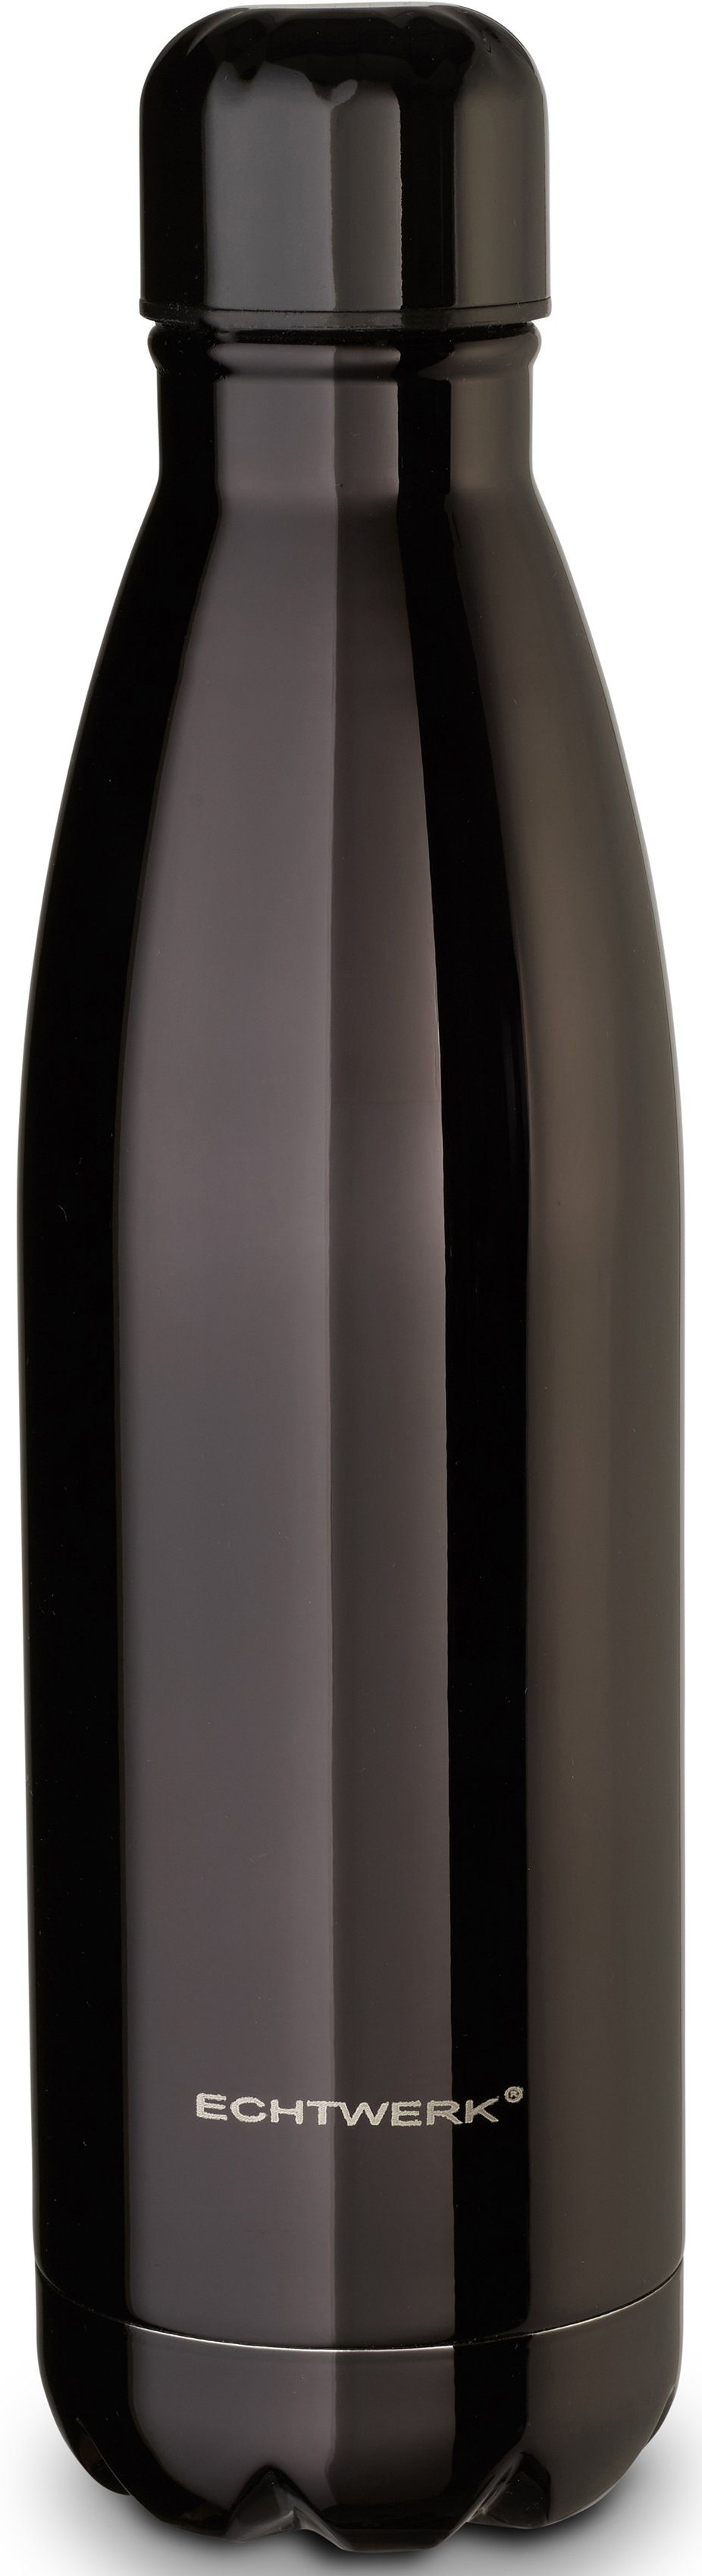 Isolierflasche aus BPA-Frei Trinkflasche, ECHTWERK schwarz Shiny, Klavierlackoptik, Edelstahl, hochwertigem